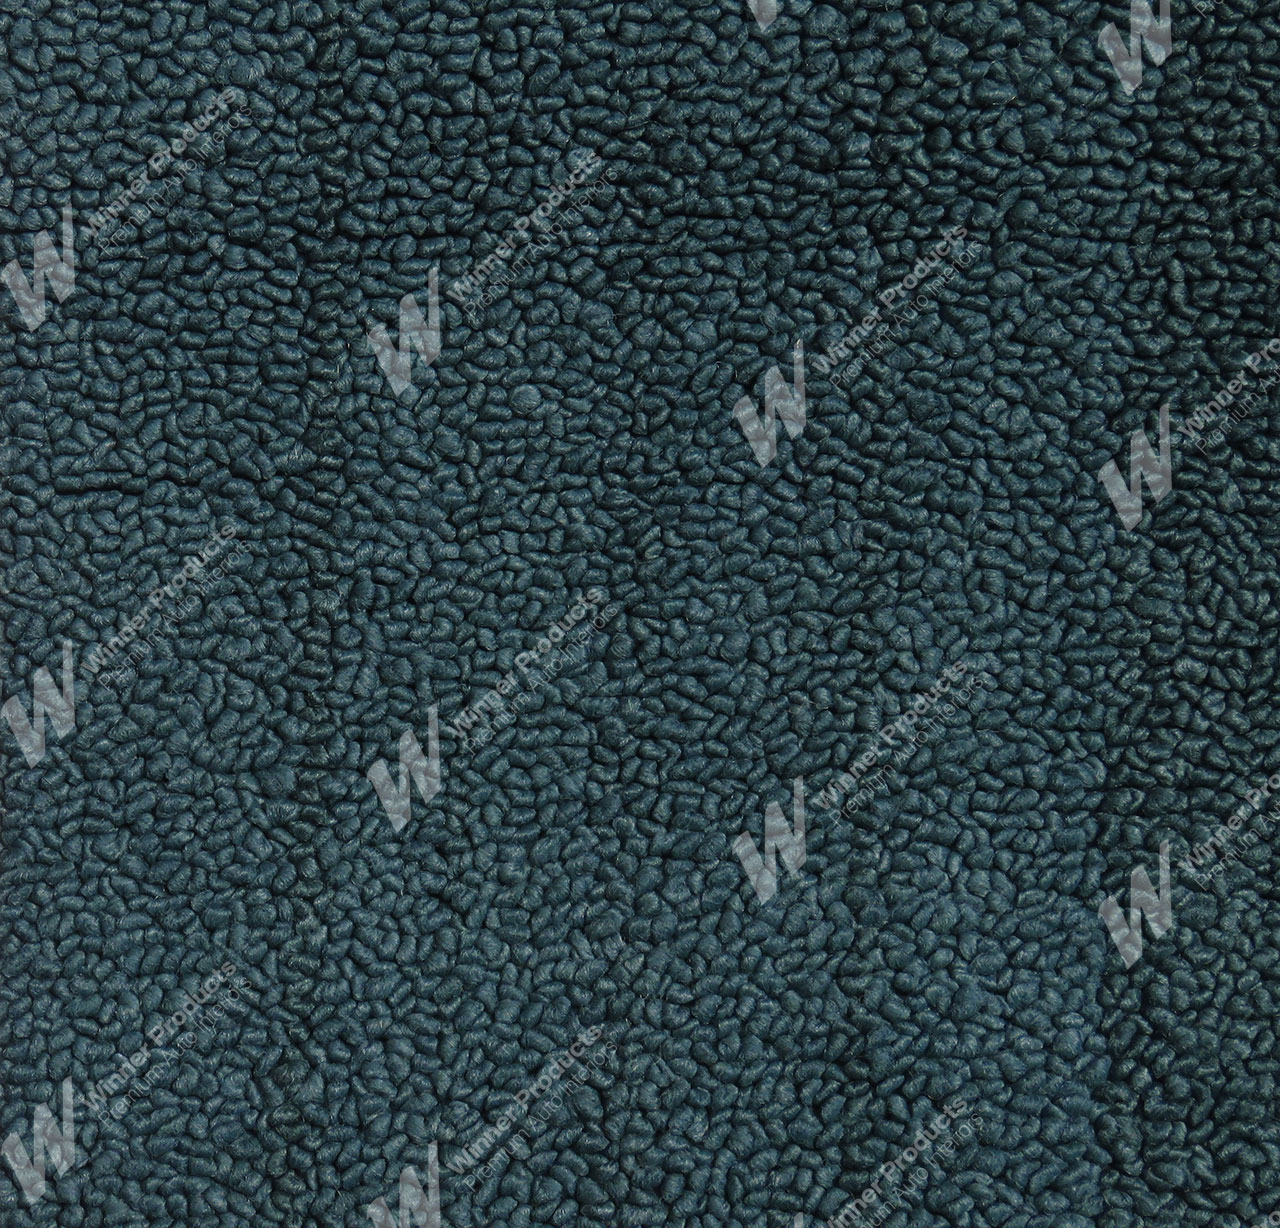 Holden Kingswood HG Kingswood Panel Van 13E Turquoise Mist Carpet (Image 1 of 1)